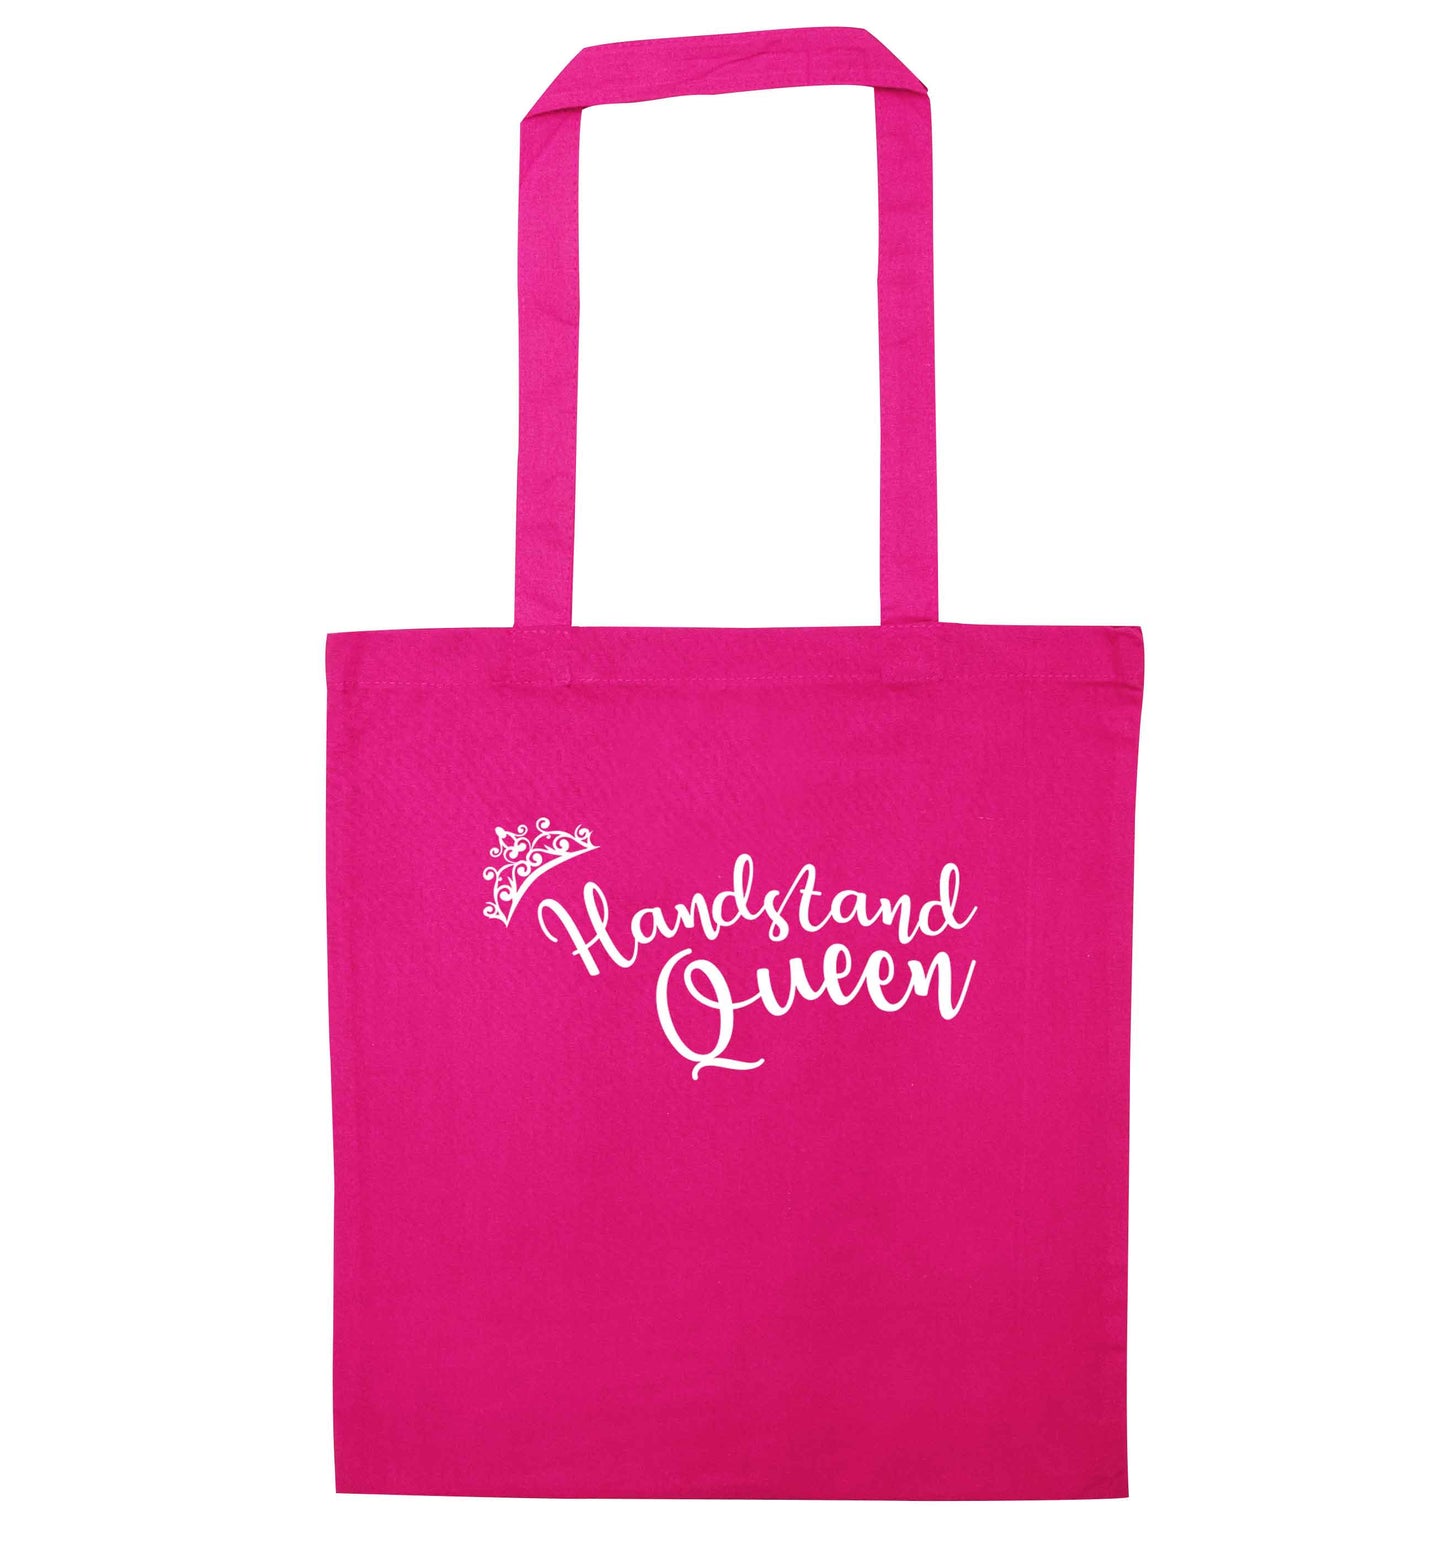 Handstand Queen pink tote bag